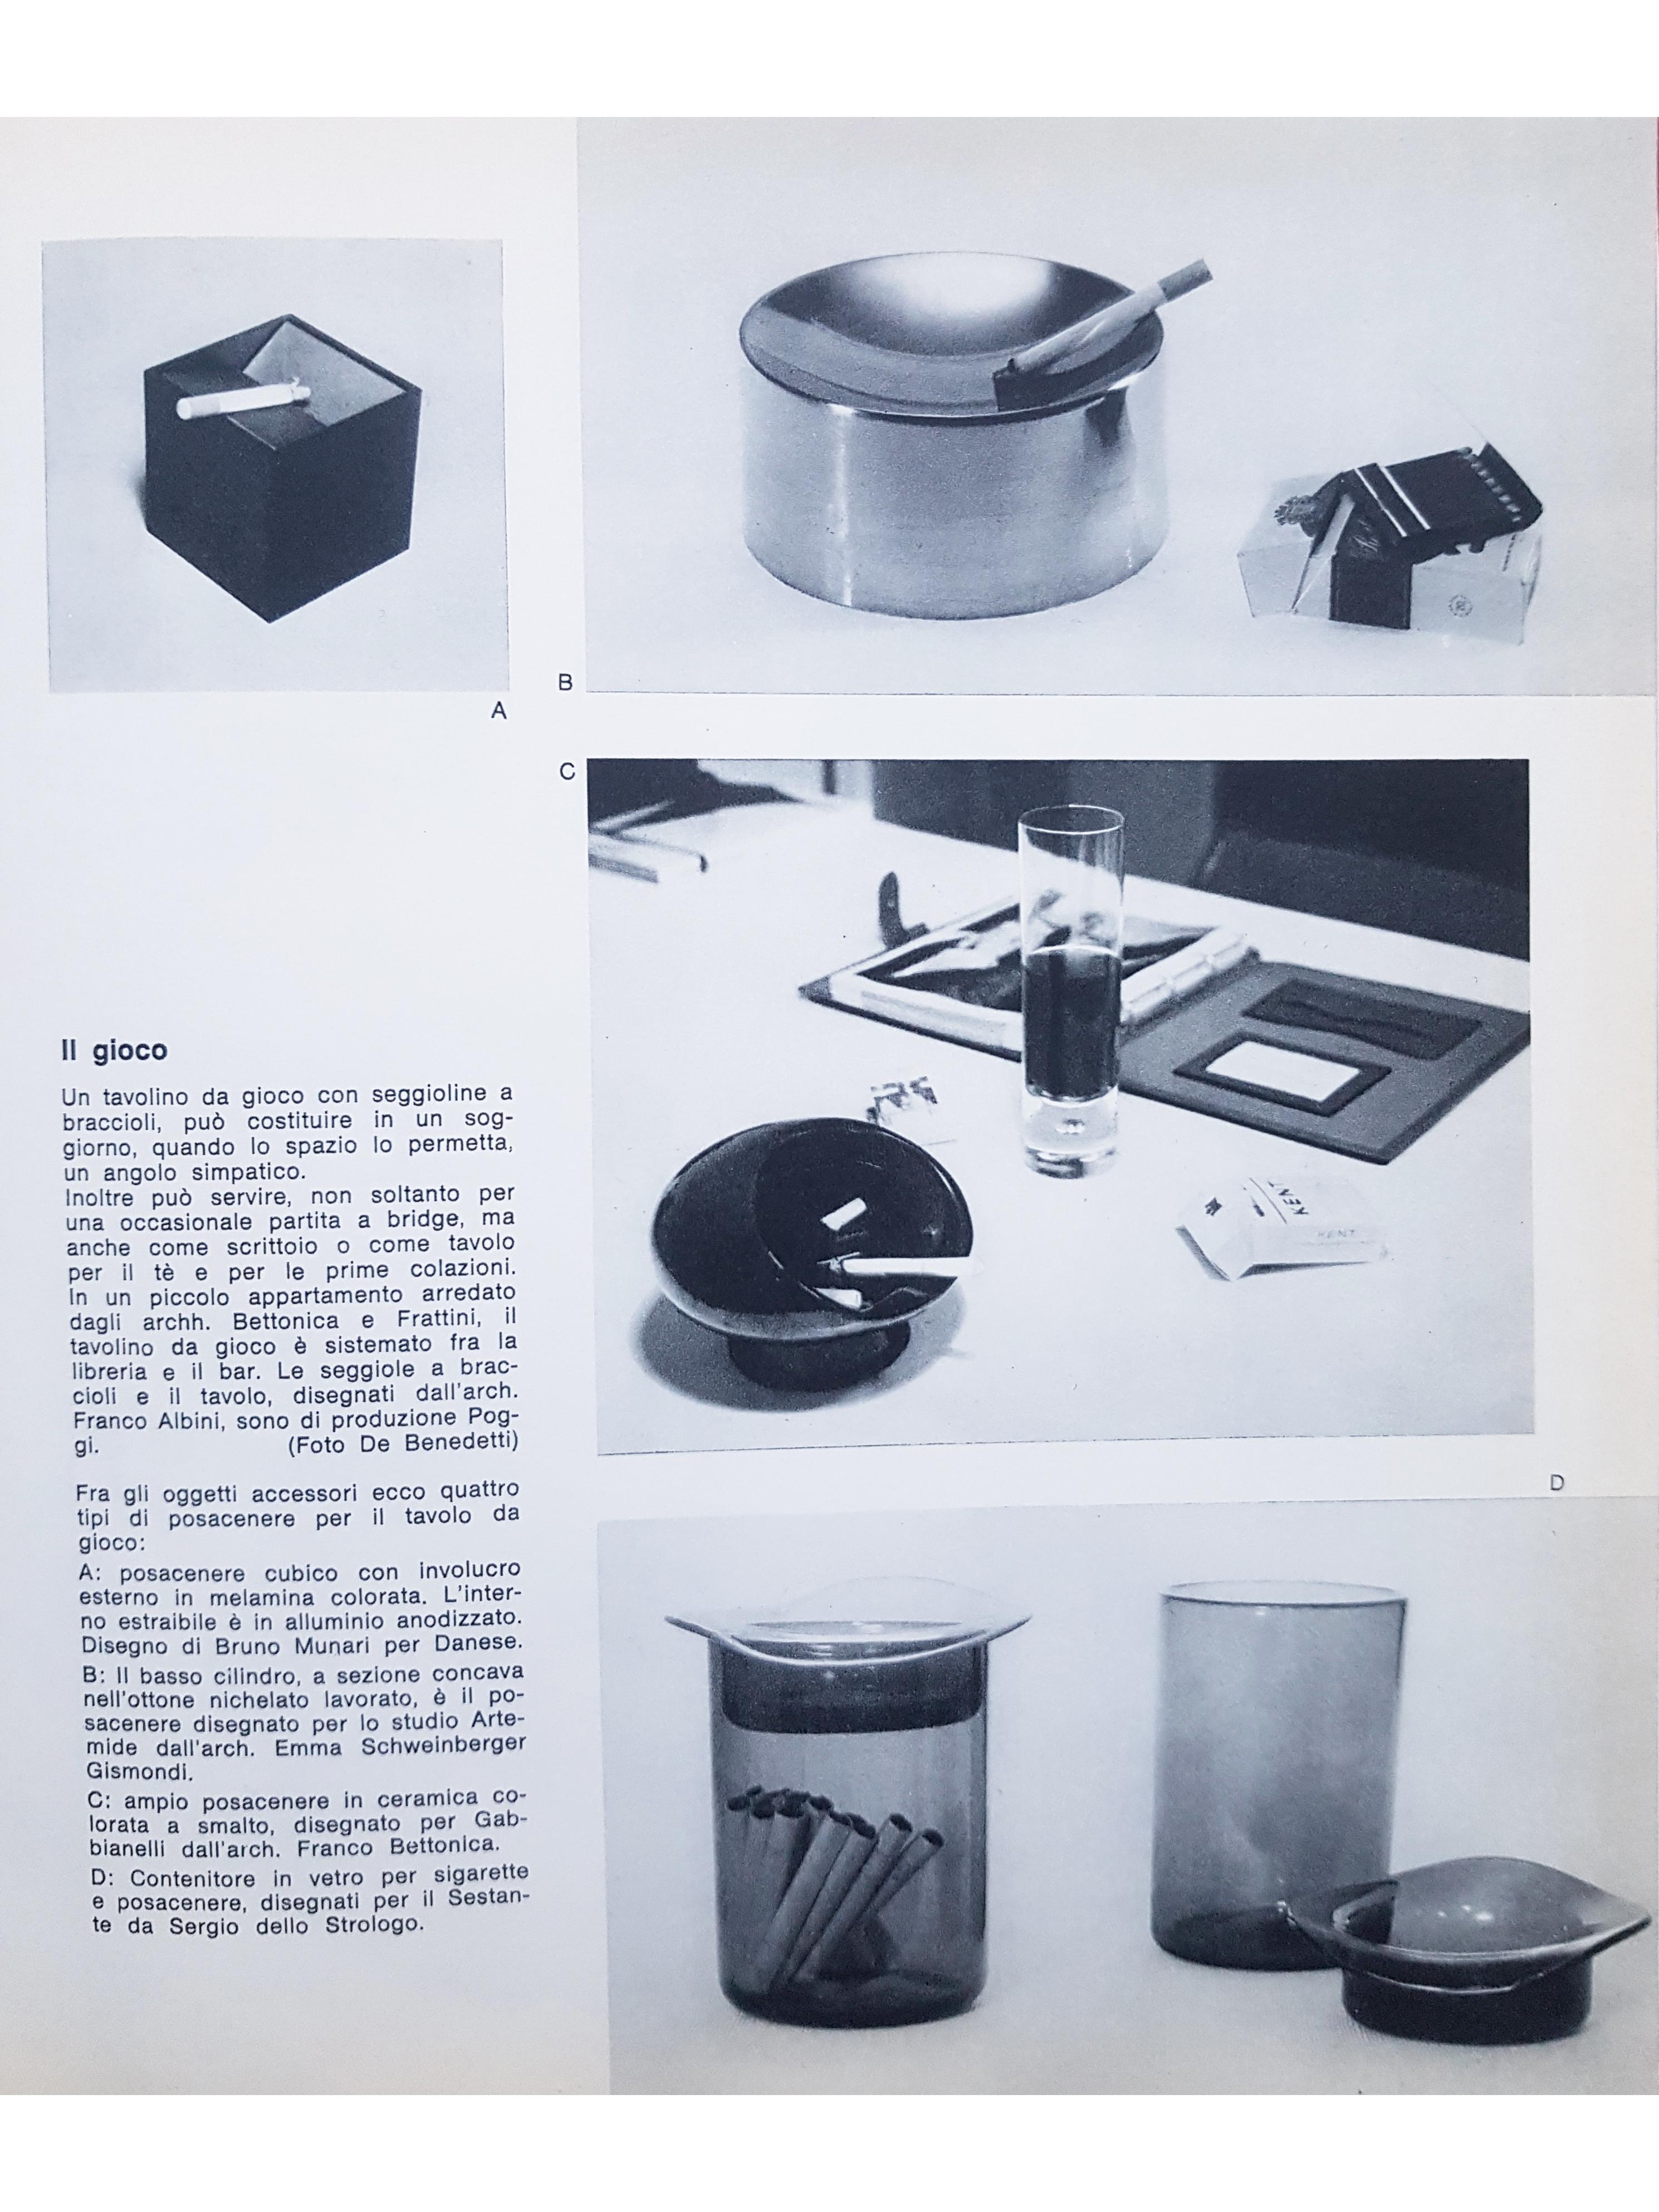 Steel & Plastic 1960s Table Ashtray by E. Gismondi Schweinberger for Artemide For Sale 2